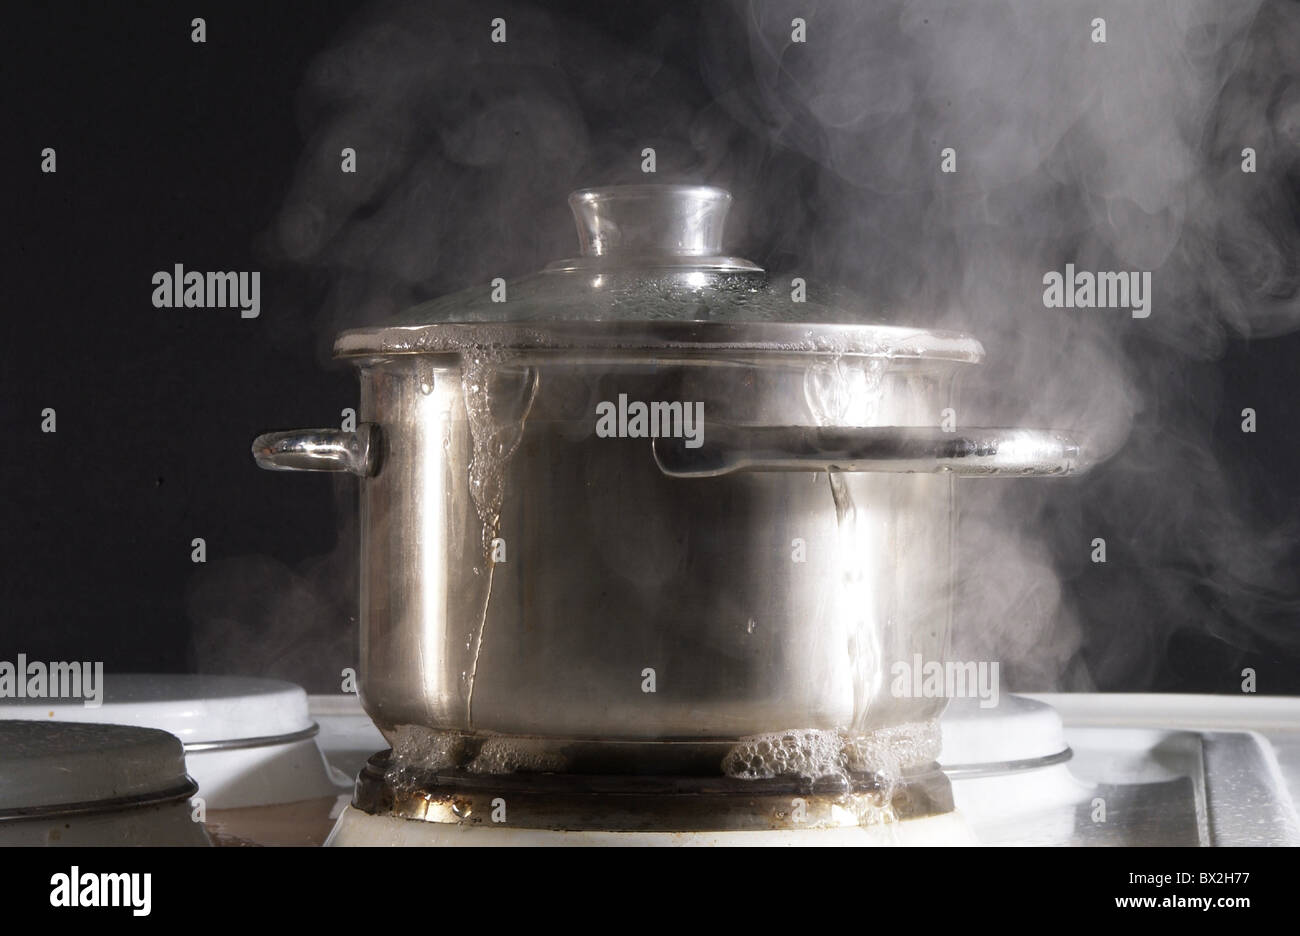 Kochen über einheimische Küche Küche Herd überkocht überrannt Freilauf Topf  Problem Topf Dampf st Stockfotografie - Alamy